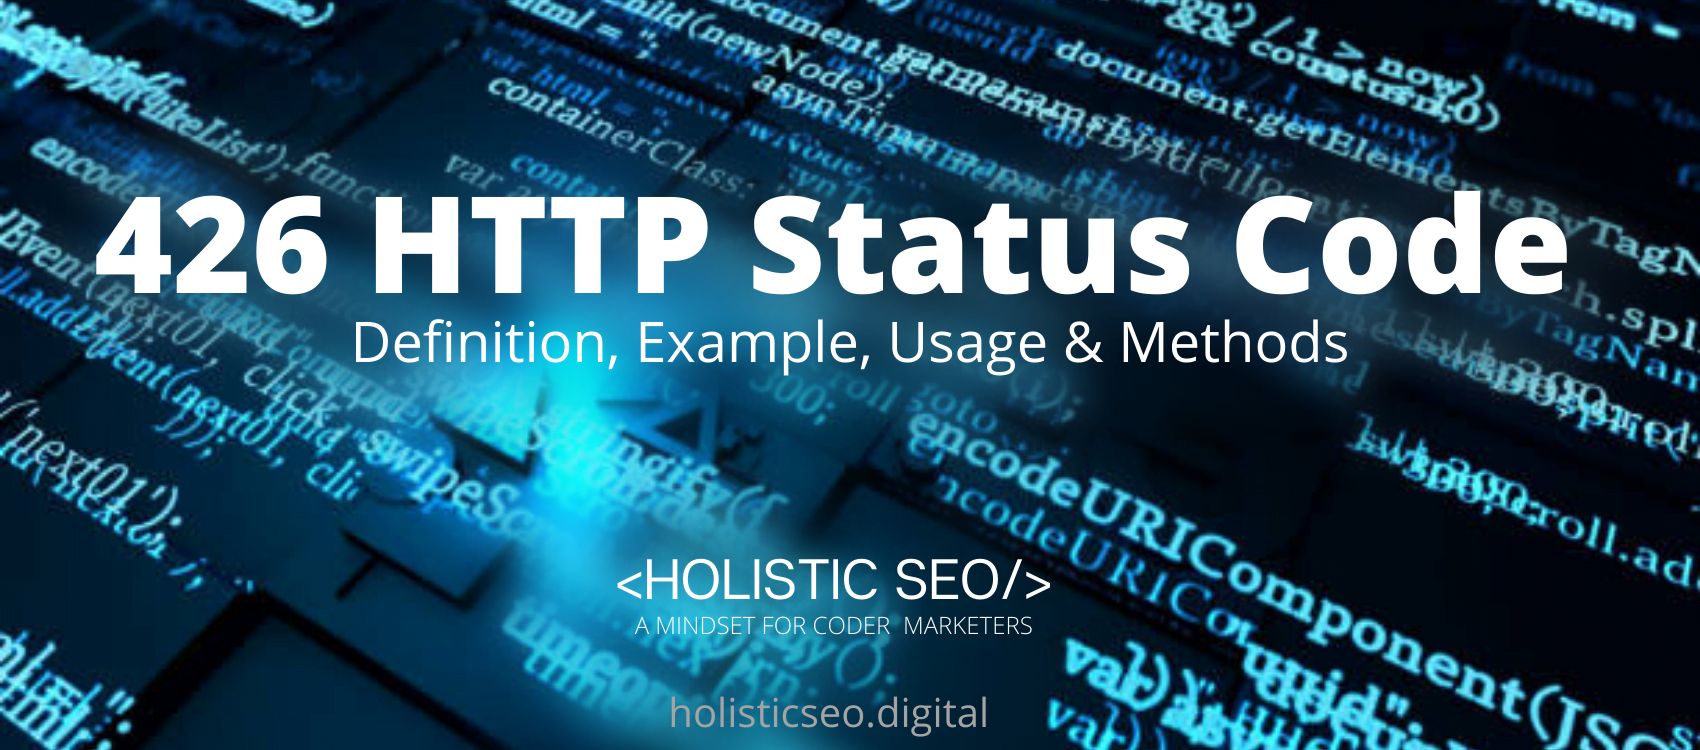 426 HTTP Status Code